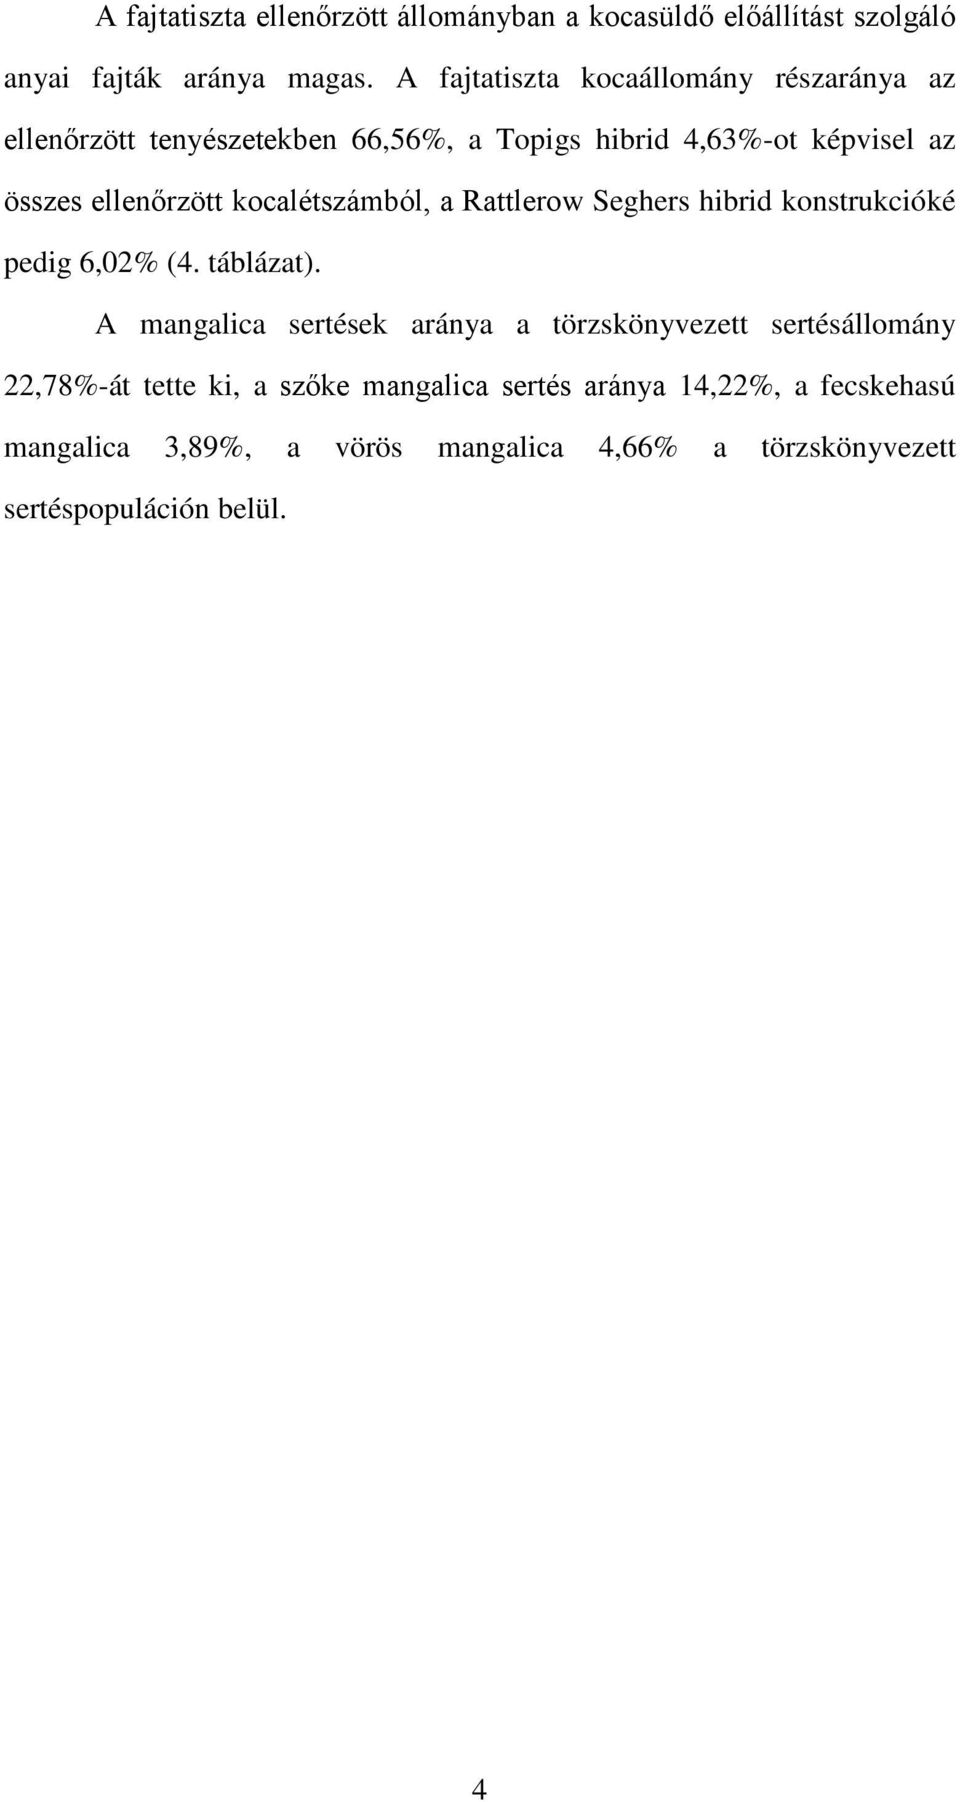 kocalétszámból, a Rattlerow Seghers hibrid konstrukcióké pedig 6,02% (4. táblázat).